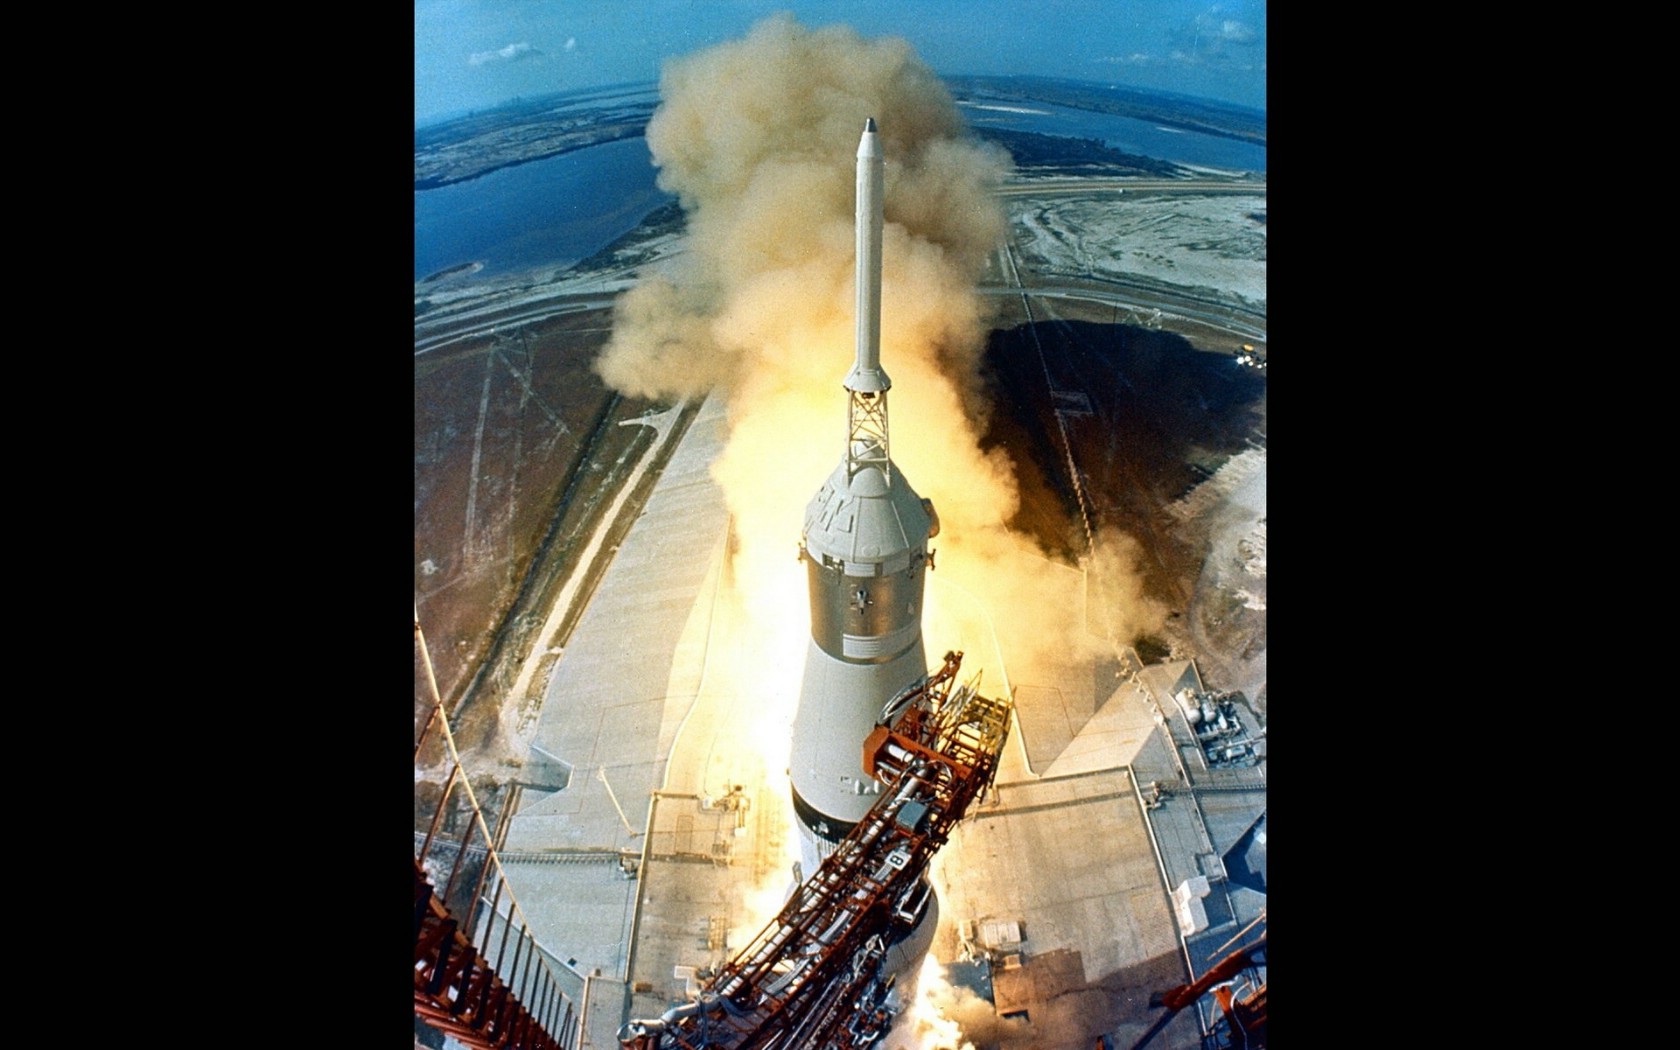 壁纸1680x1050阿波罗11 Apollo 11 珍贵照片壁纸 壁纸38壁纸 阿波罗11 （Apo壁纸 阿波罗11 （Apo图片 阿波罗11 （Apo素材 风景壁纸 风景图库 风景图片素材桌面壁纸